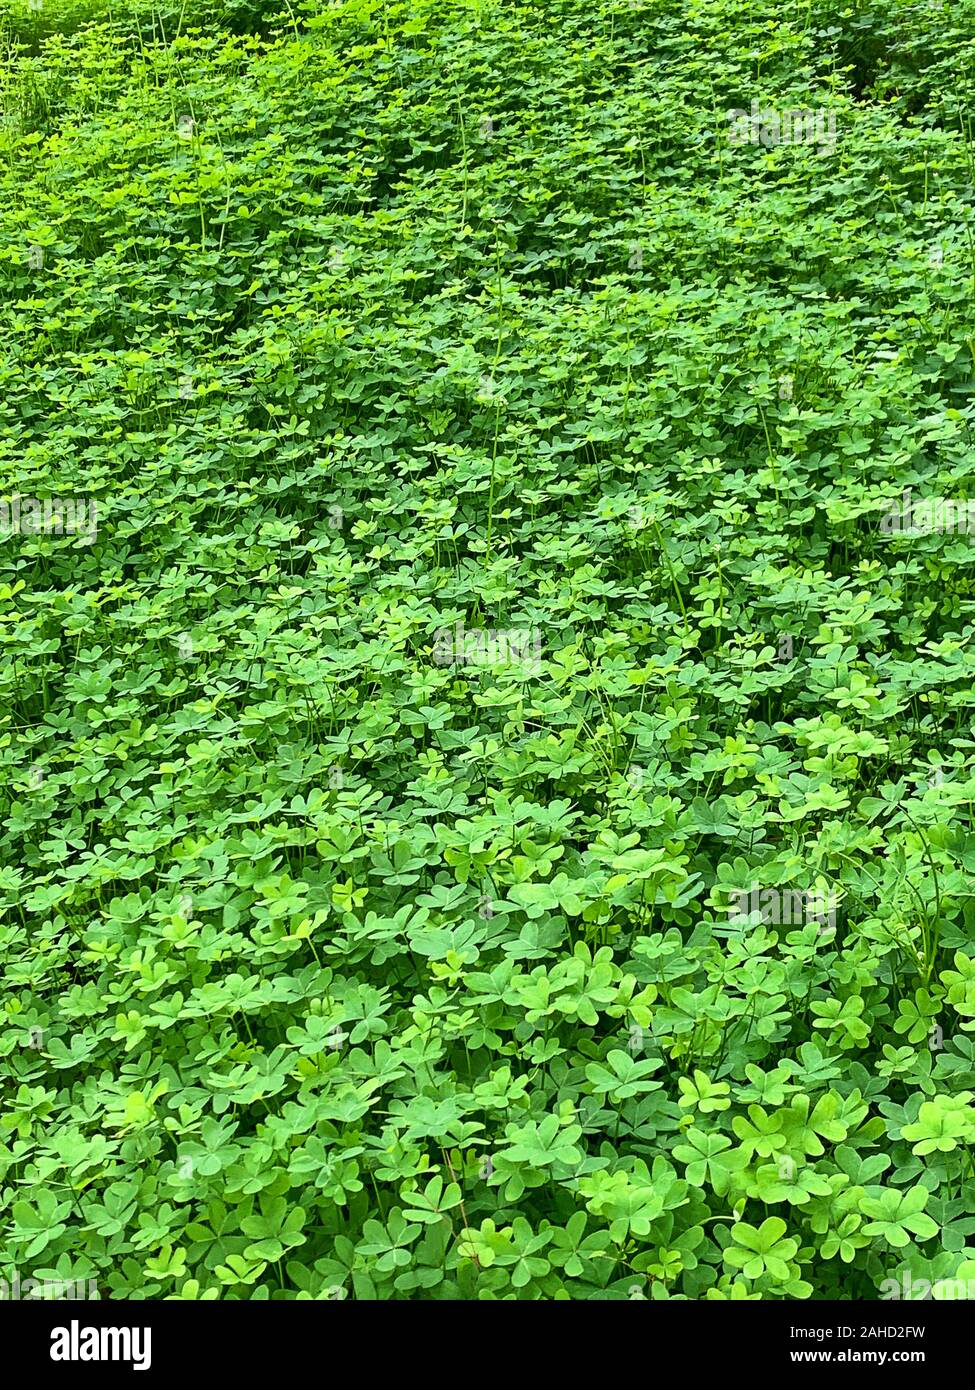 Grünen Klee Wiese. Feld von Bermuda buttercup, Oxalis pes-caprae, mit herzförmigen Blättern, eine blühende Pflanze und Evergreen in der sauerklee Familie. Stockfoto